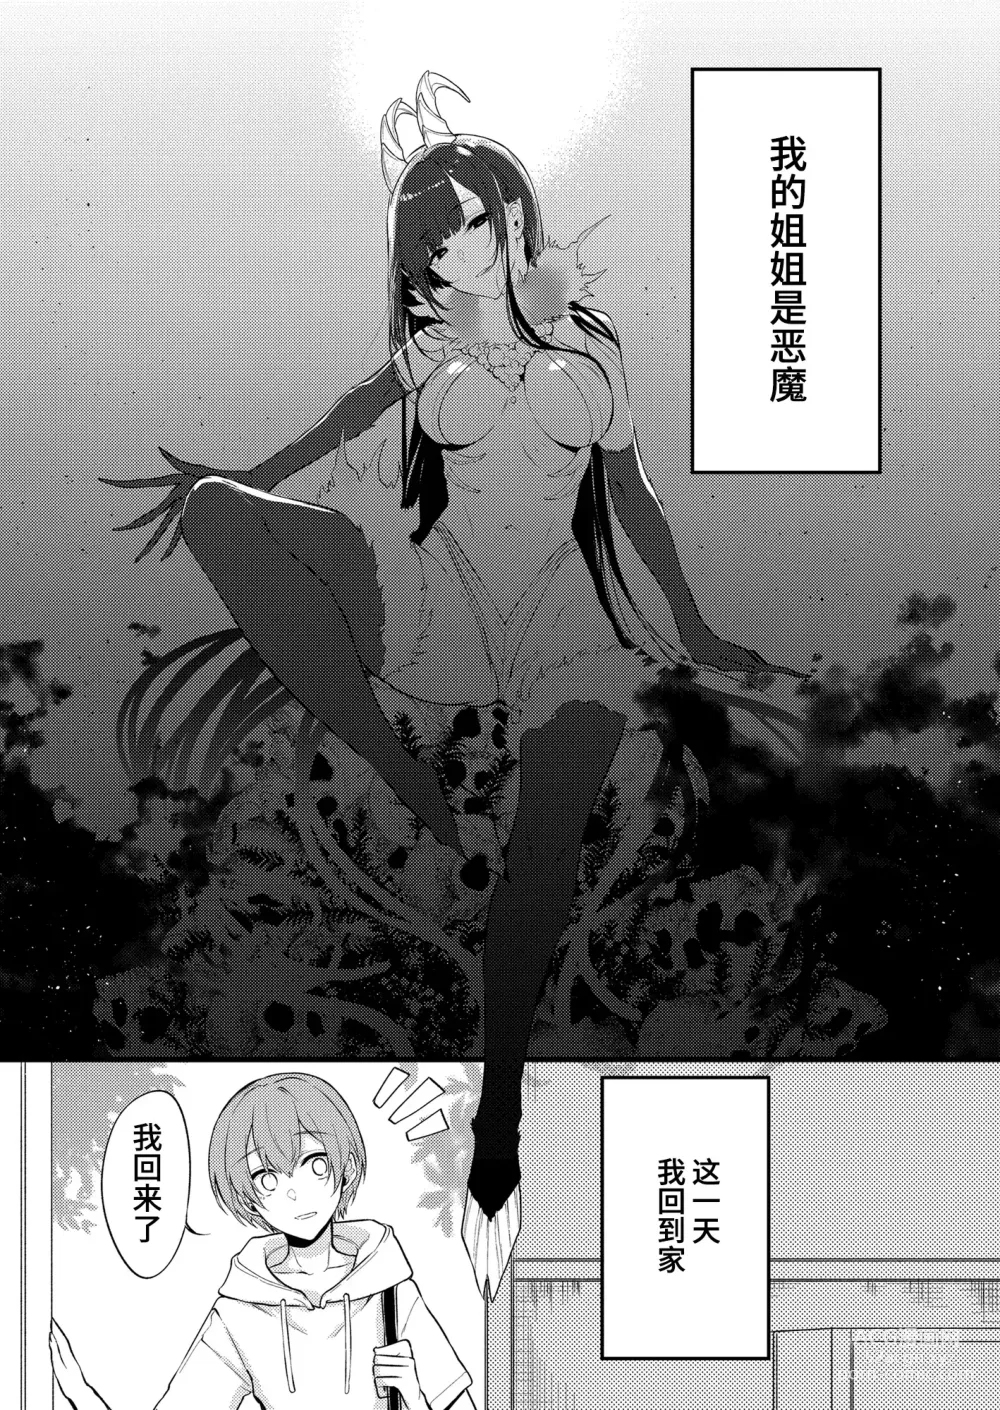 Page 311 of doujinshi Ane Naru Mono 1-11